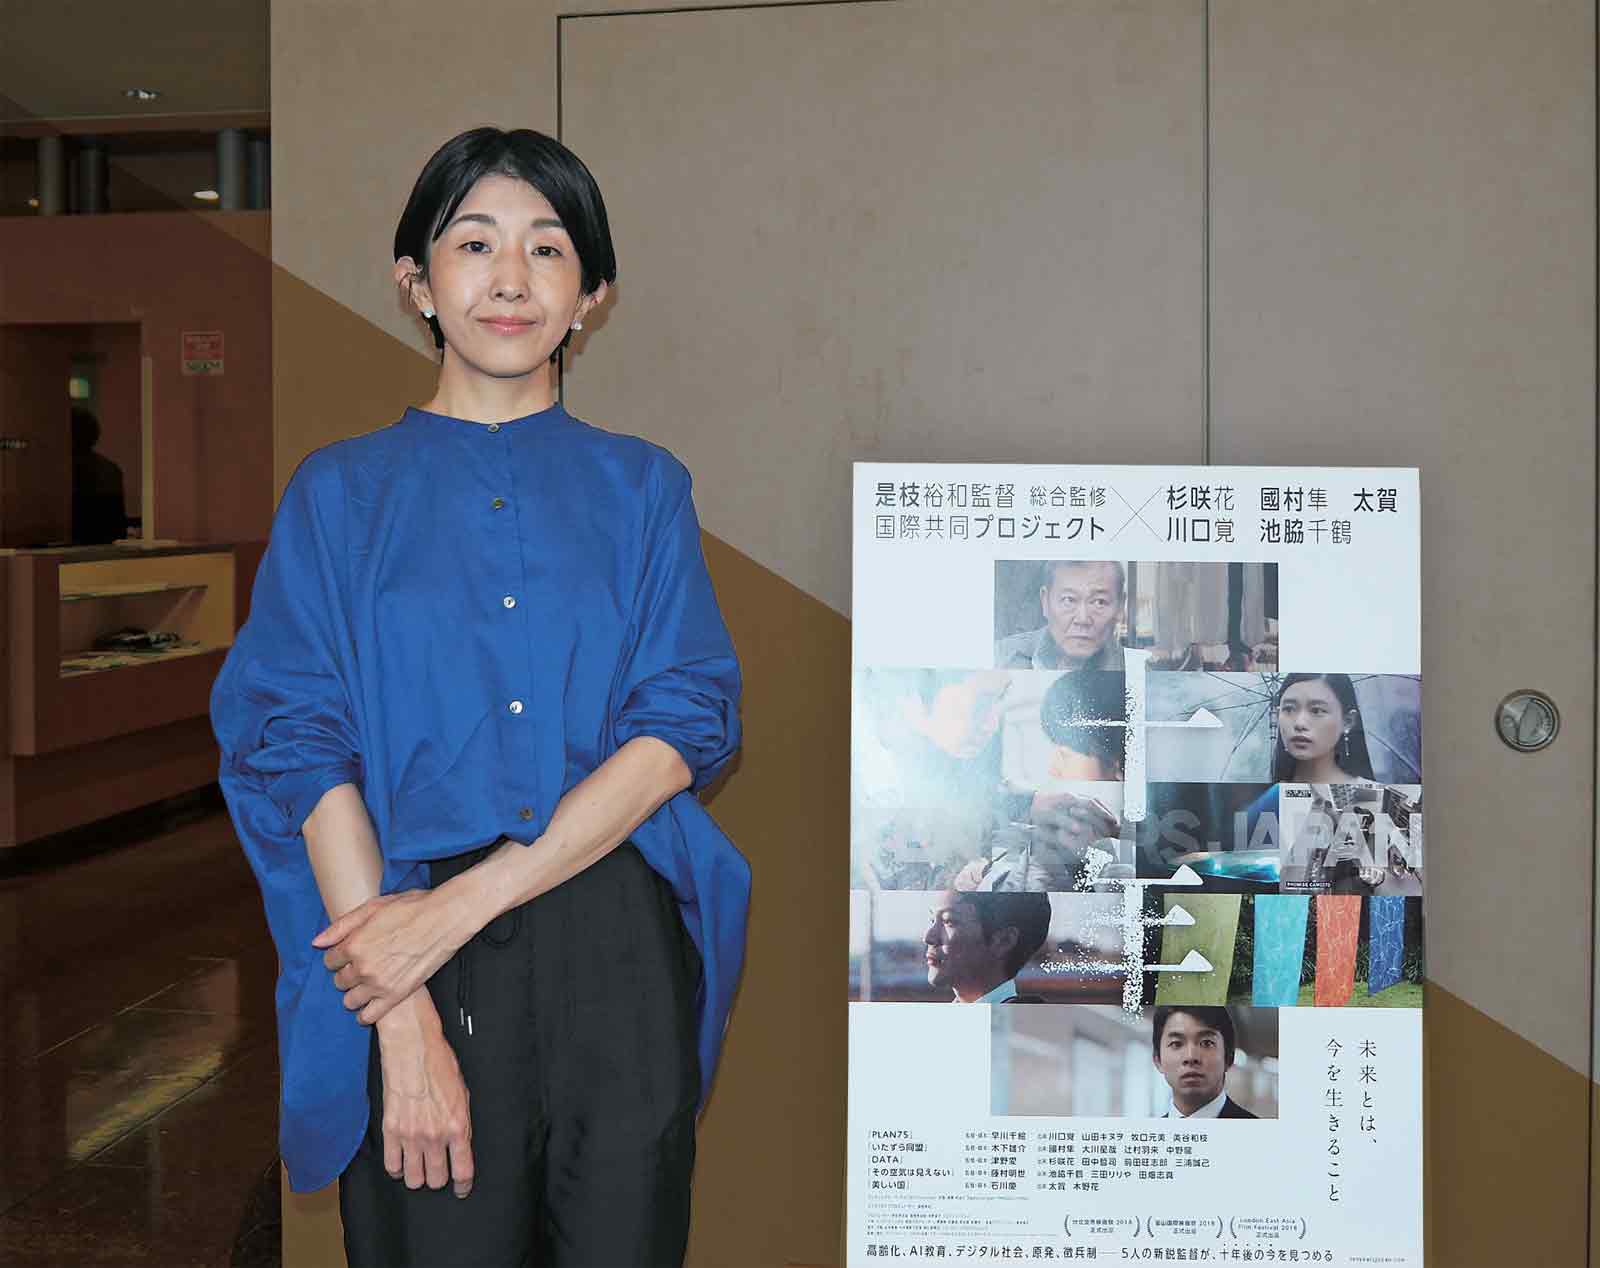 2022年8月に大阪でリバイバル上映された短編 オムニバス映画『十年 Ten Years Japan』の舞台挨拶に訪れた早川千絵監督